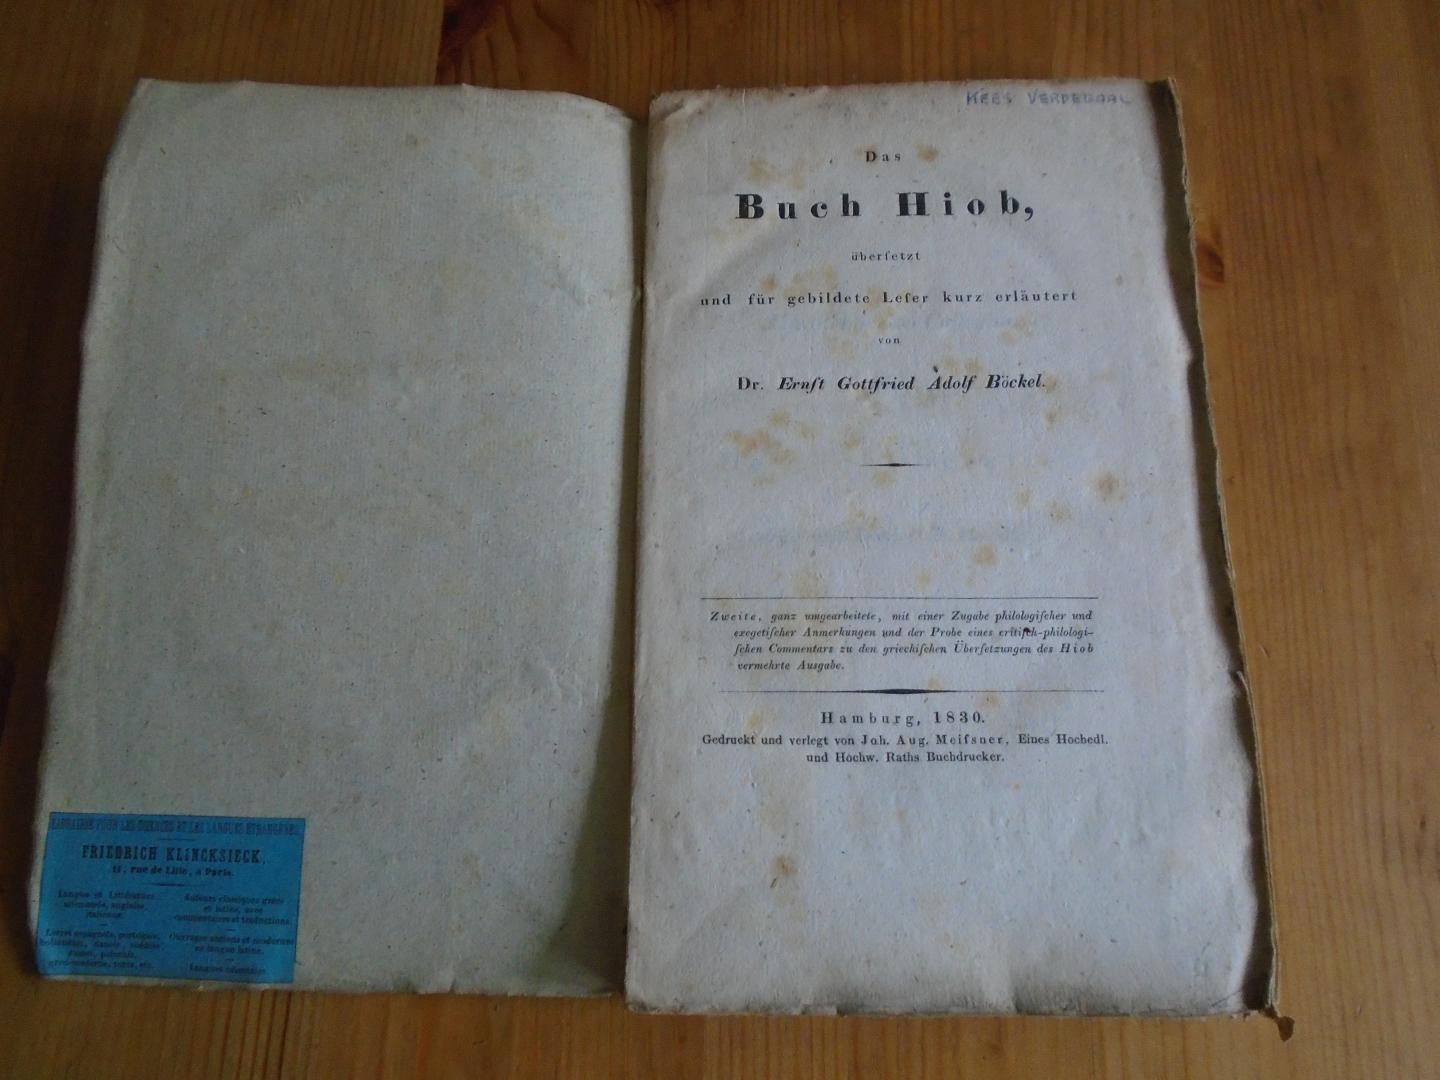 Böckel, Ernst Gottfried Adolf - Das Buch Hiob, übersetzt und für die gebildete Leser kurz erläutert